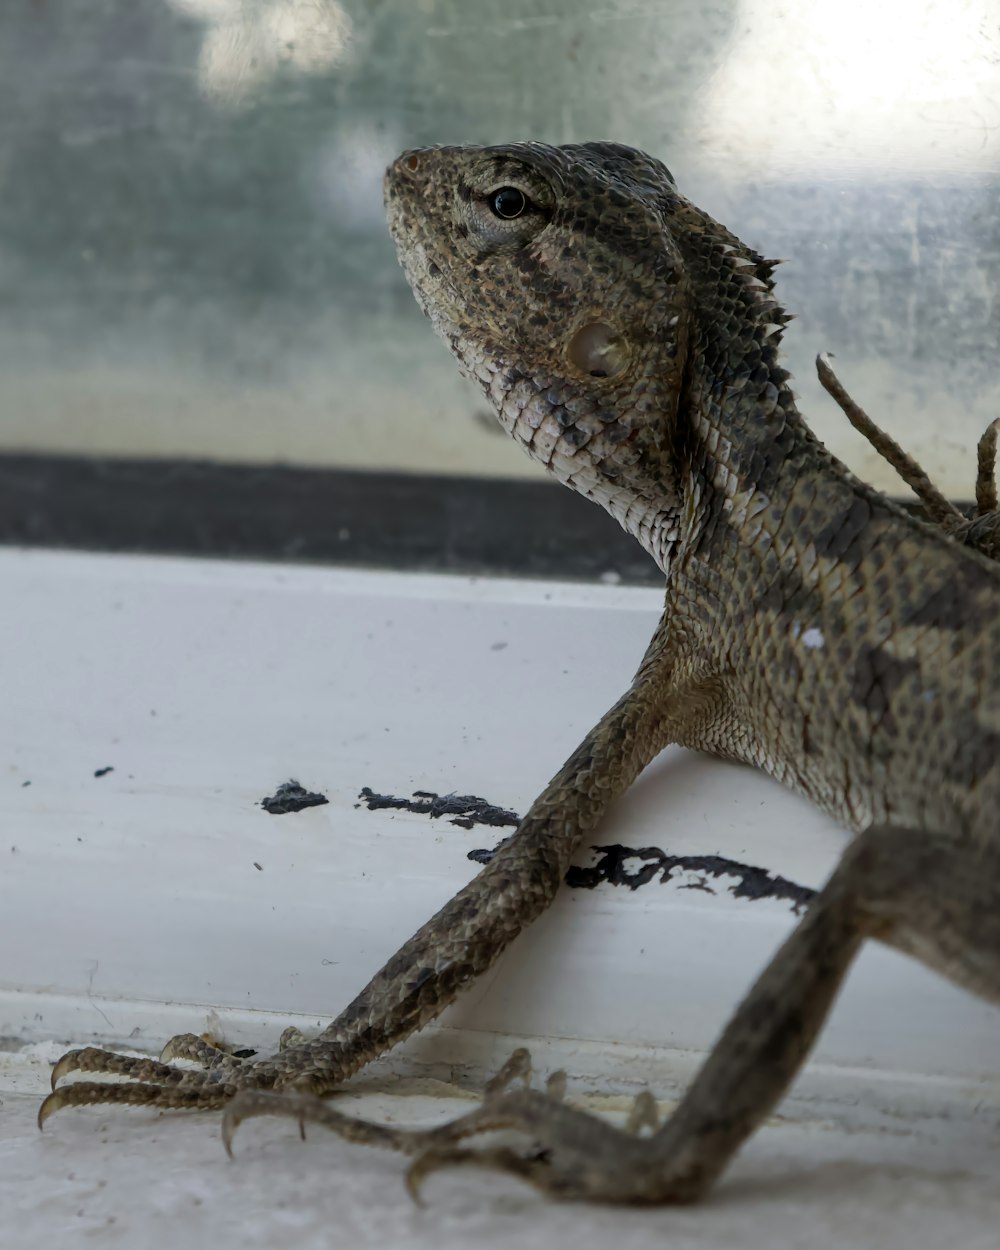 a lizard is sitting on a window sill